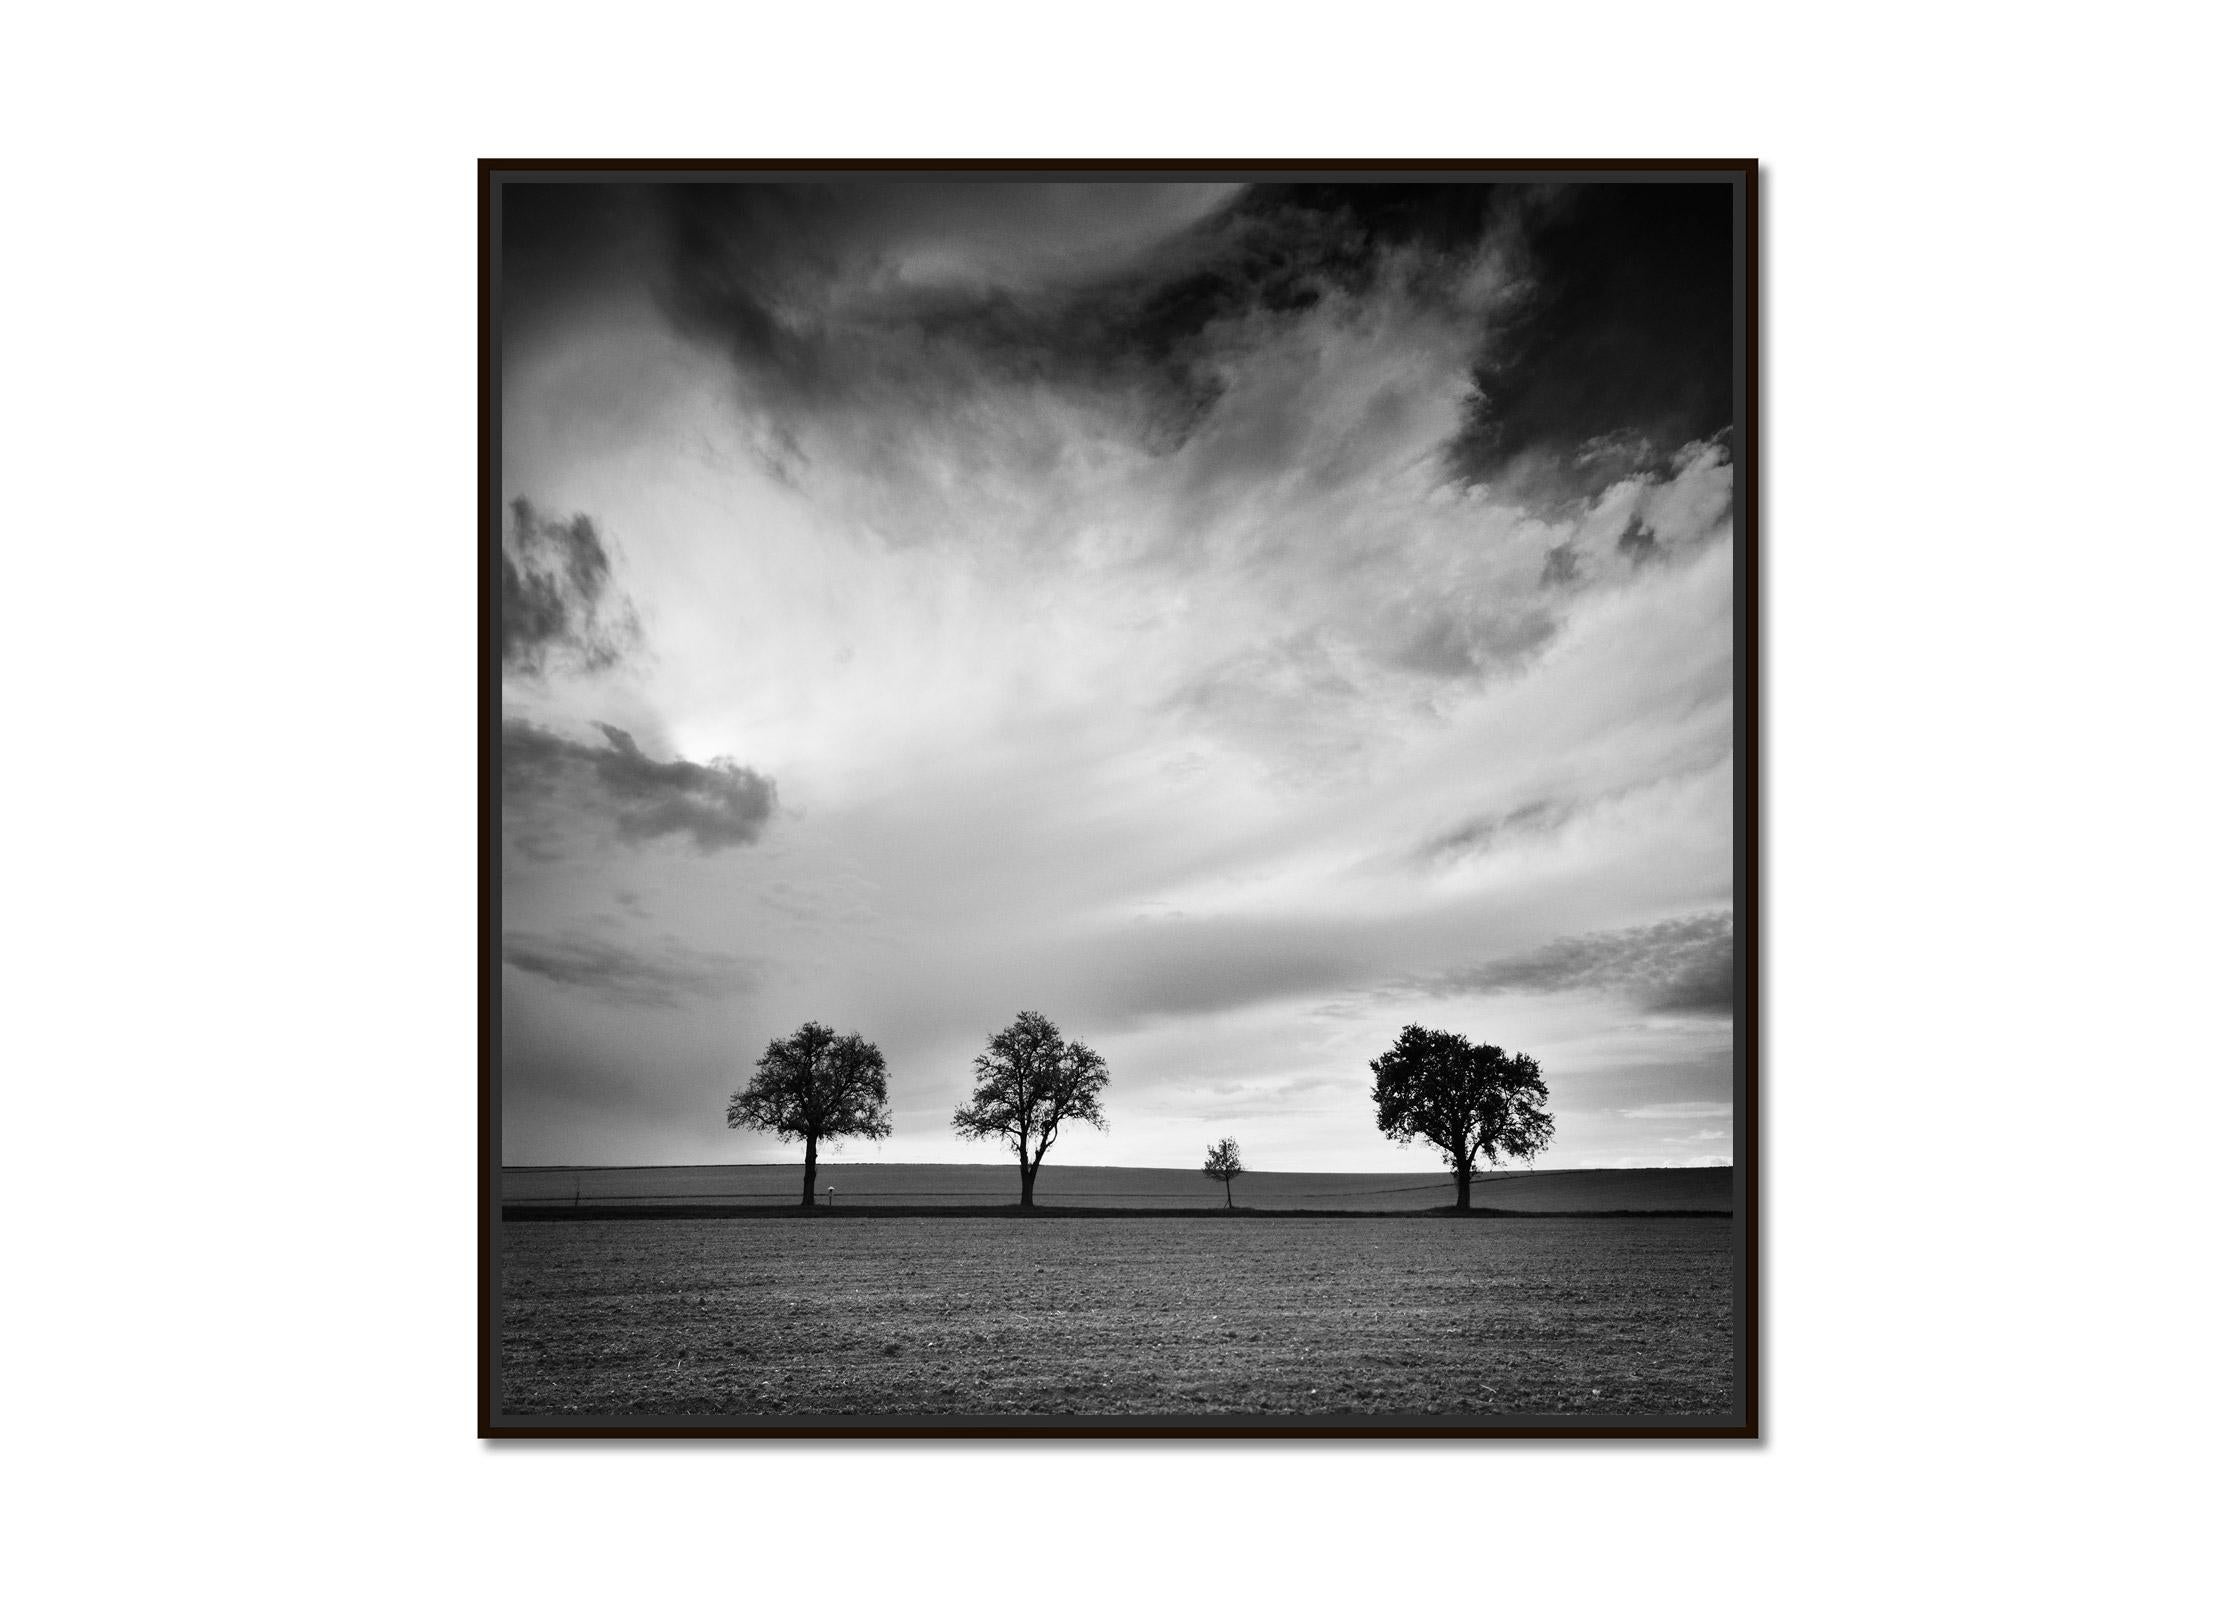 Dreieinhalb Baum, sehr wolkenverhangen, Sturm, Schwarz-Weiß-Landschaftsfotografie – Photograph von Gerald Berghammer